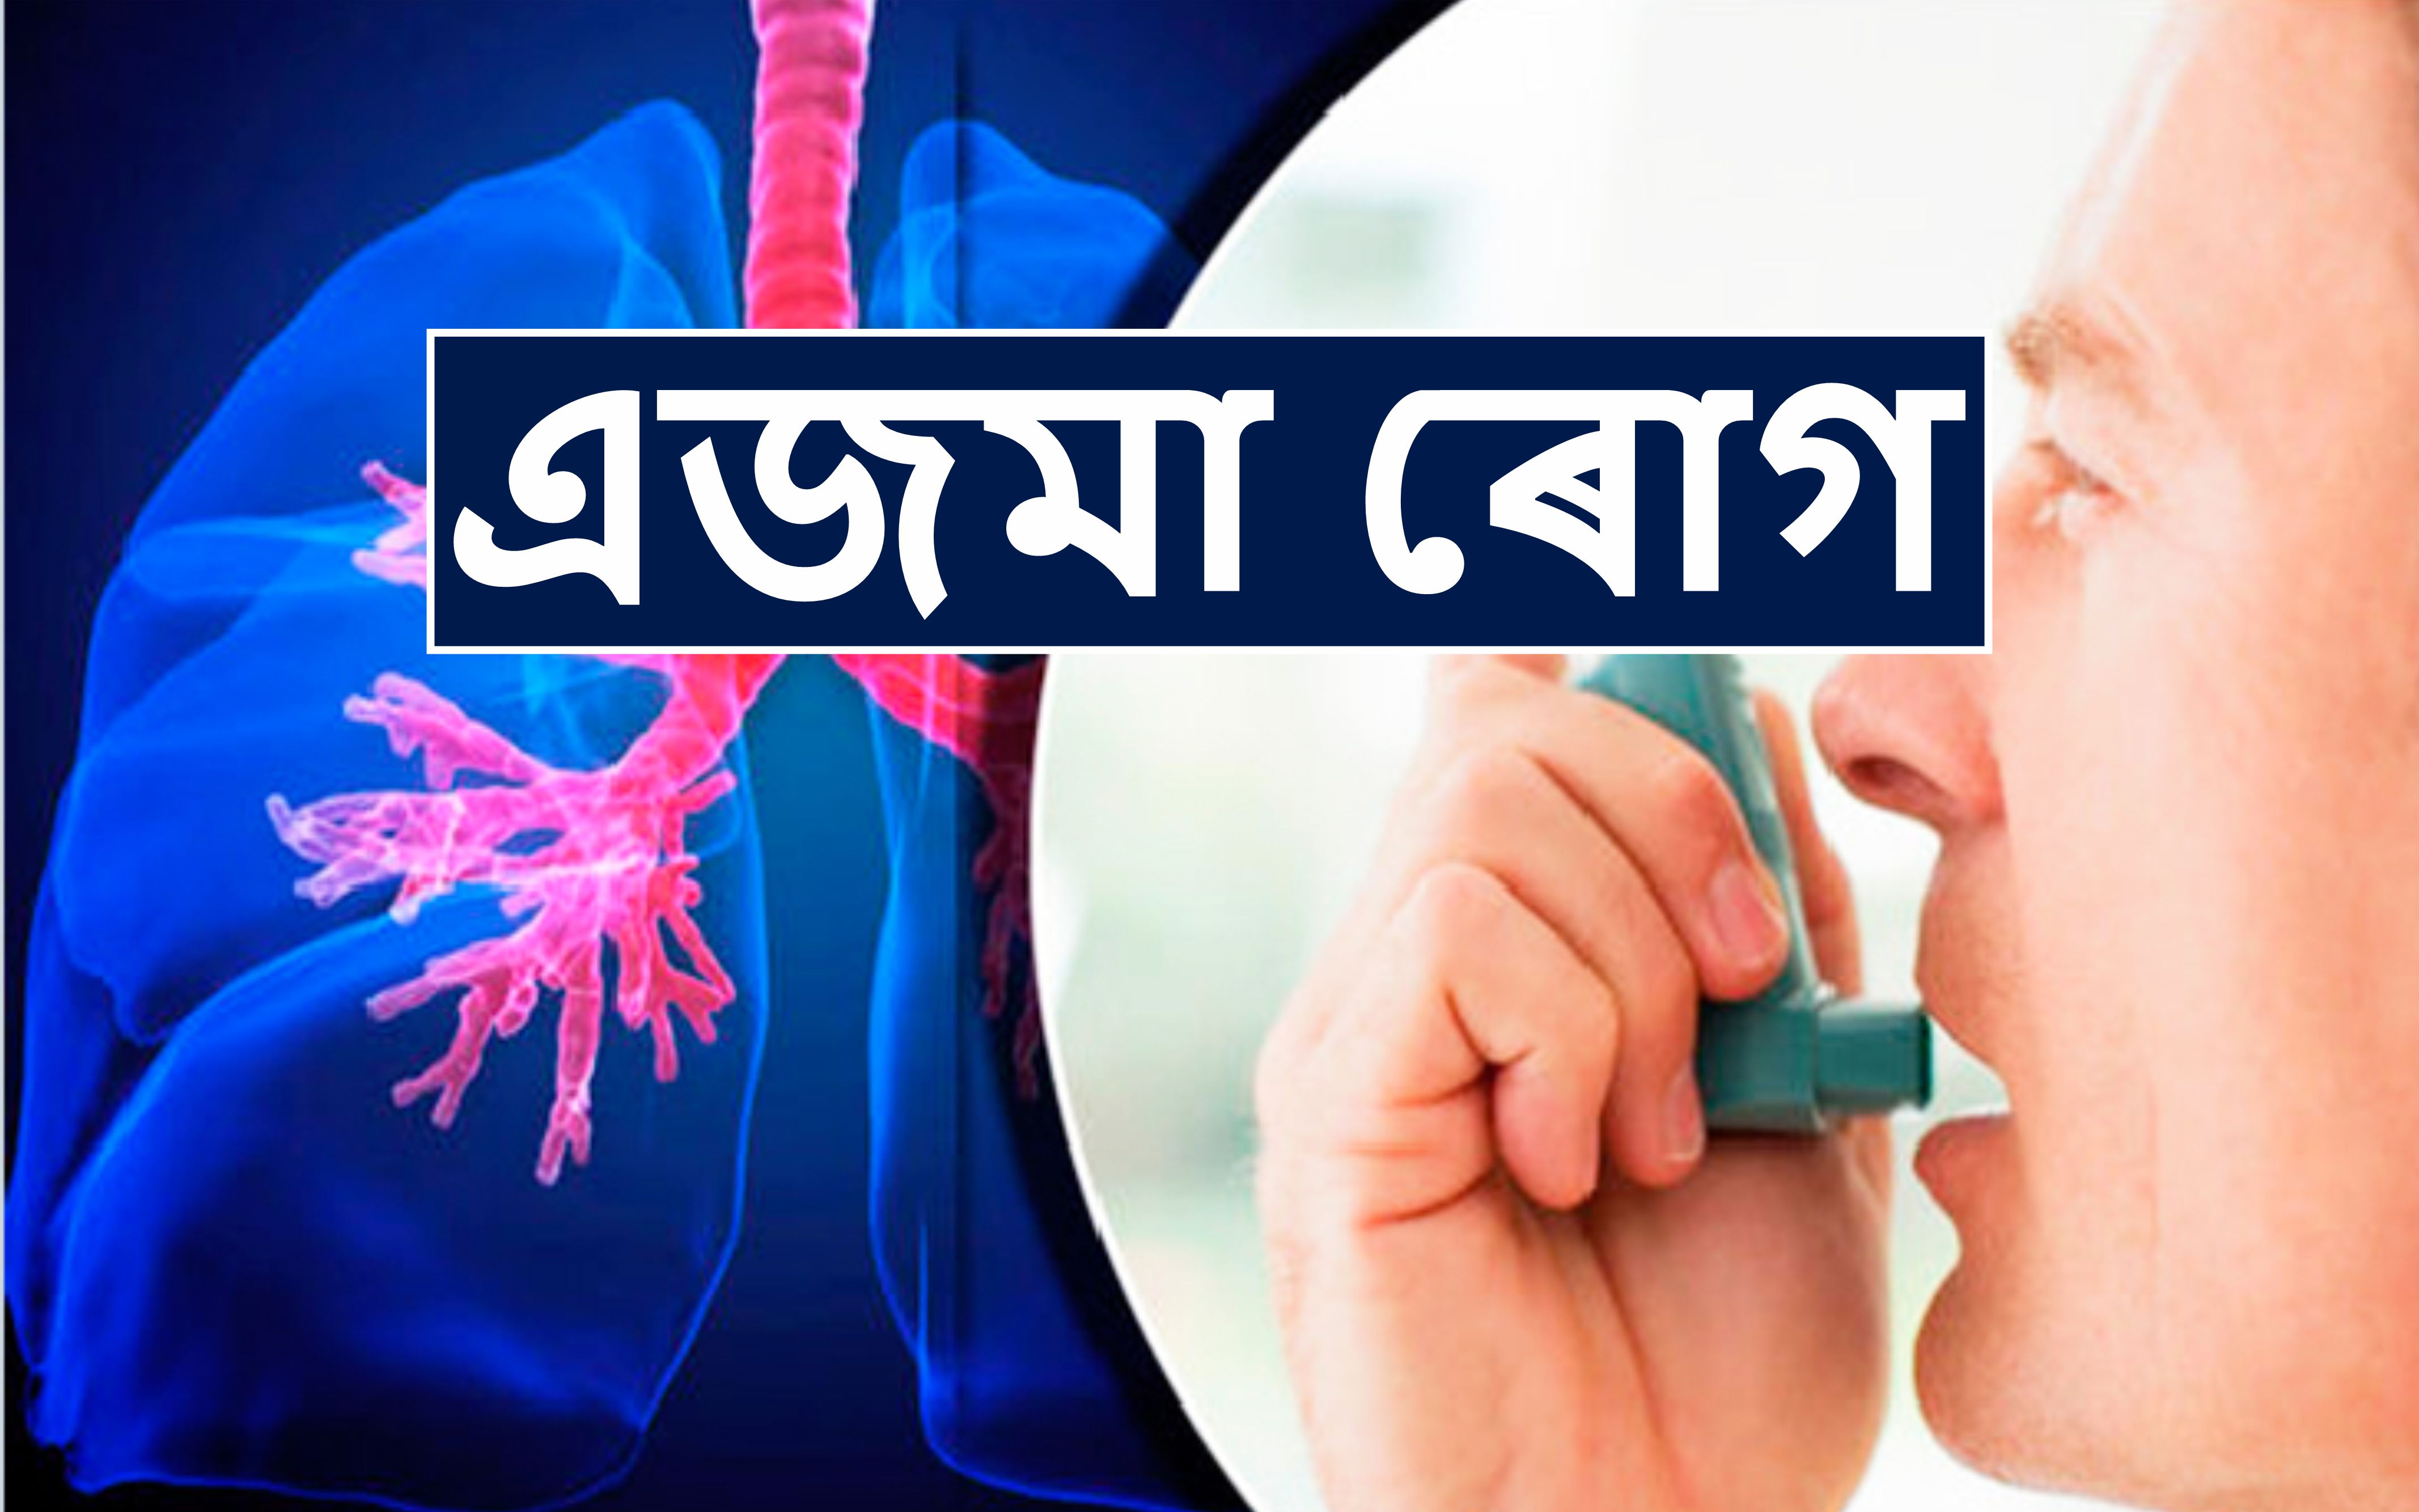 Asthma Disease